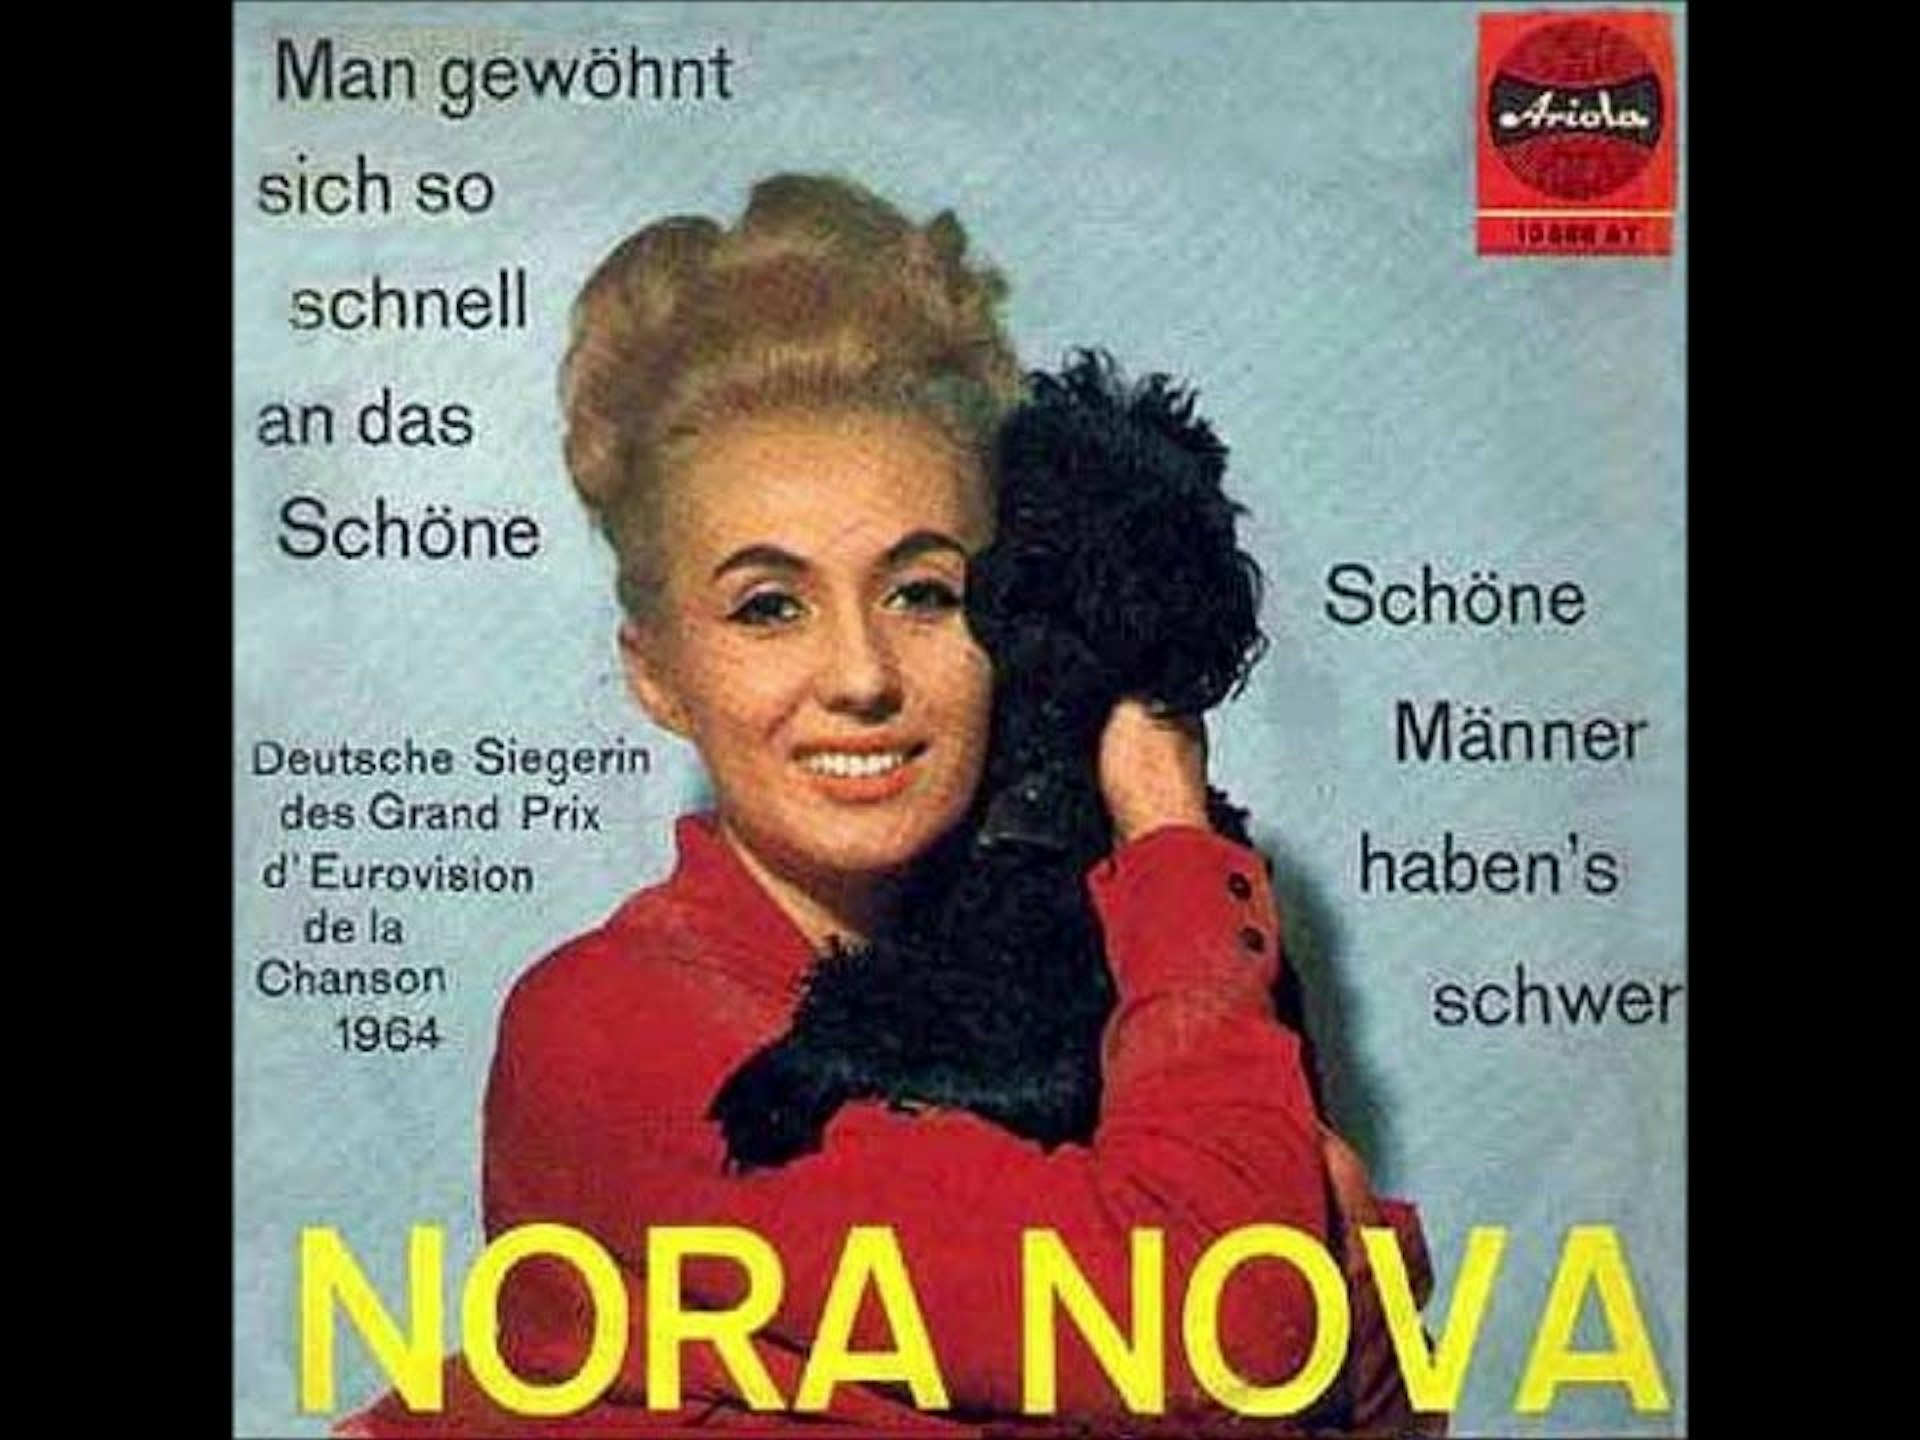 Nora Nova mit kleinem schwarzen Hund auf dem Plattencover von „Man gewöhnt sich so schnell an das Schöne“.